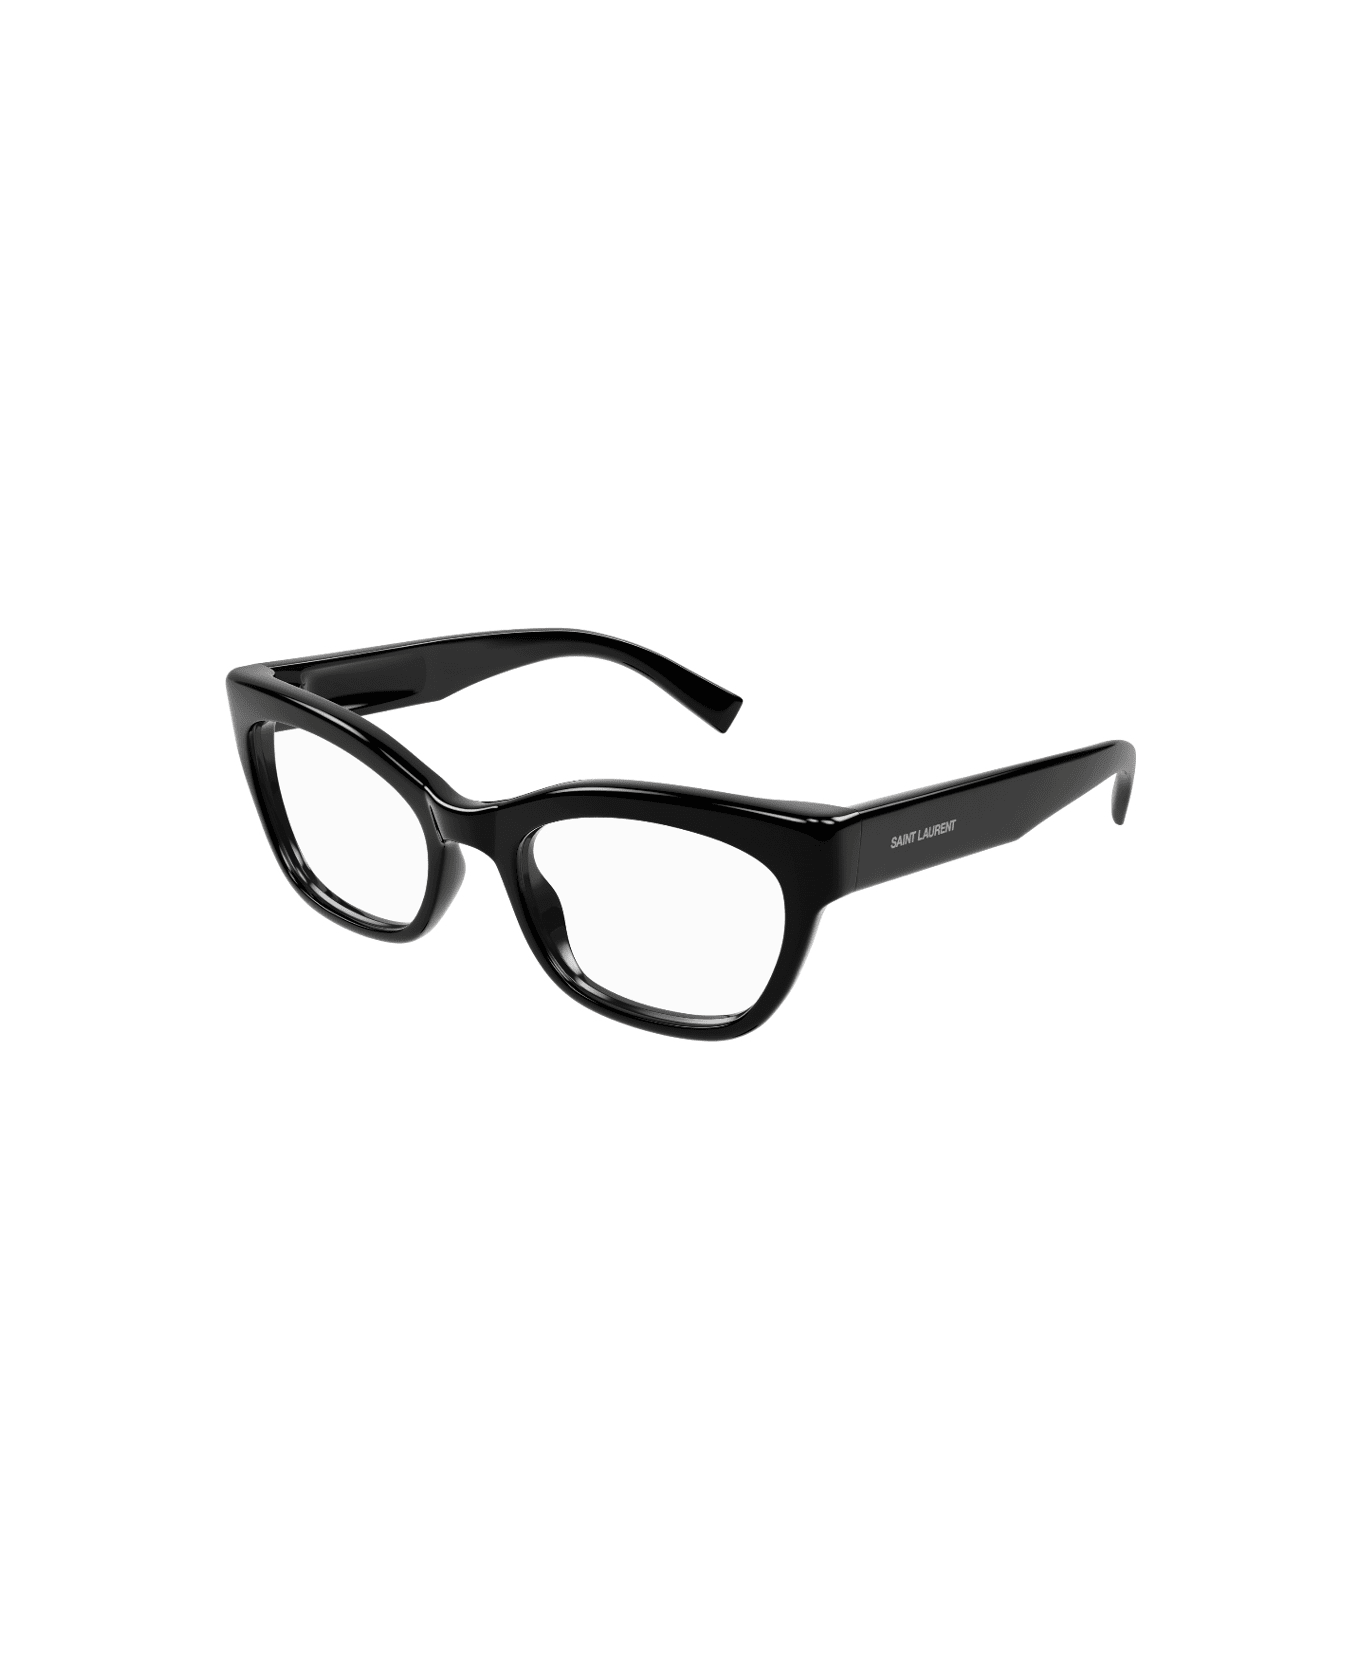 Saint Laurent Eyewear sl 643 005 Glasses アイウェア